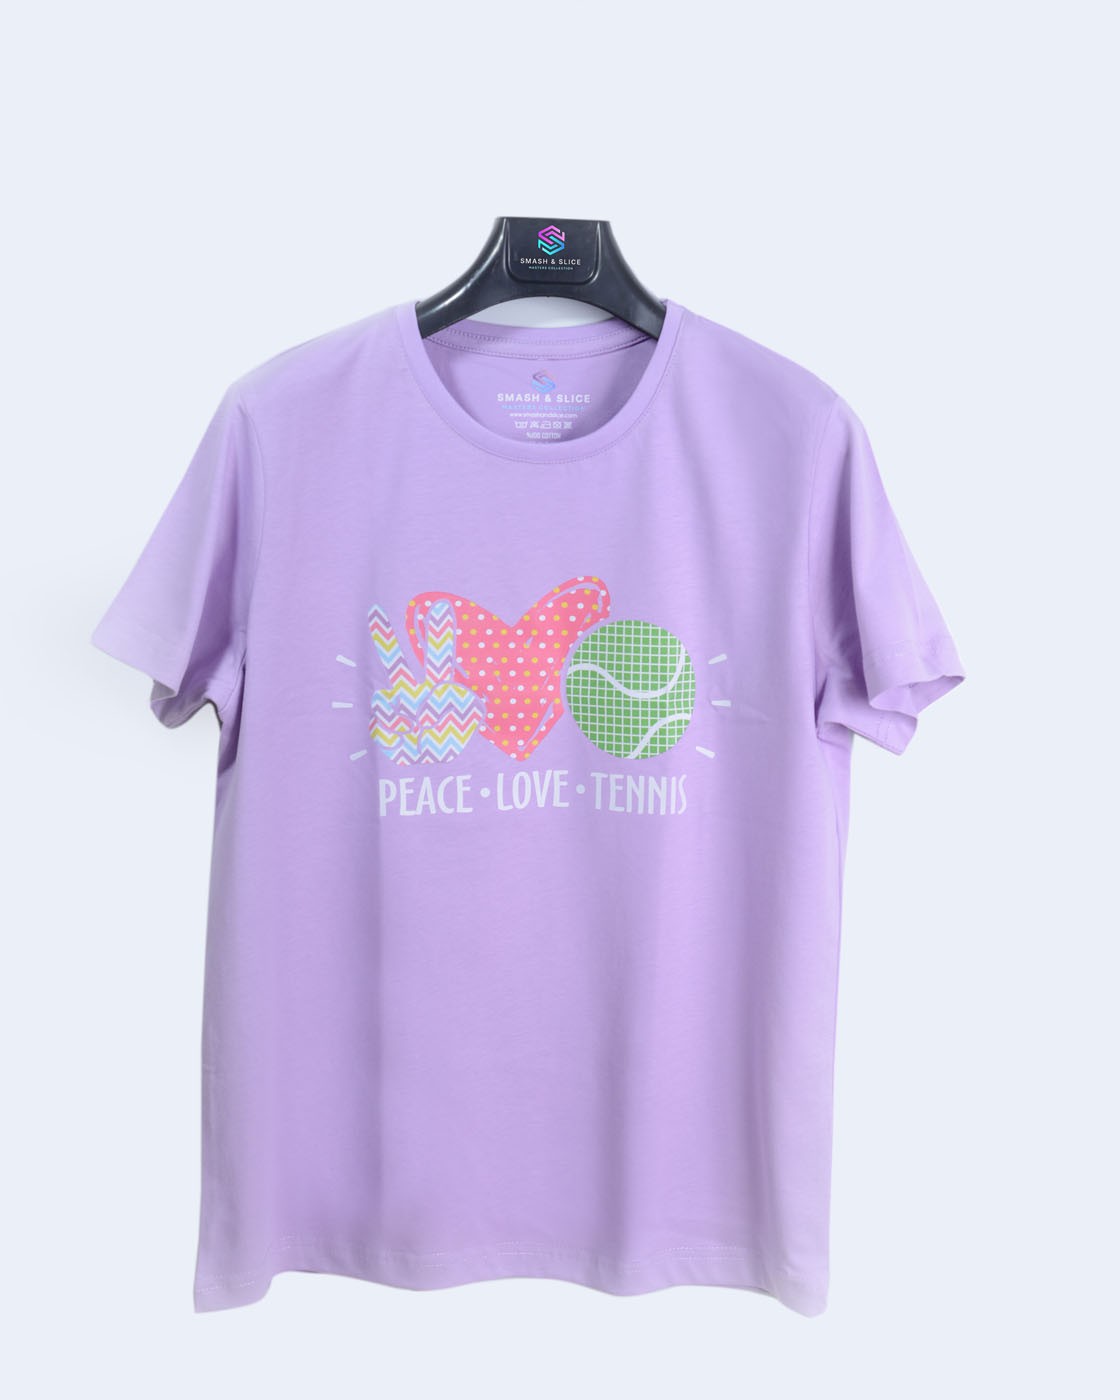 Smash & Slice Tenis Temali Baskılı Kız Çocuk T-Shirt "peace Love Tennis"